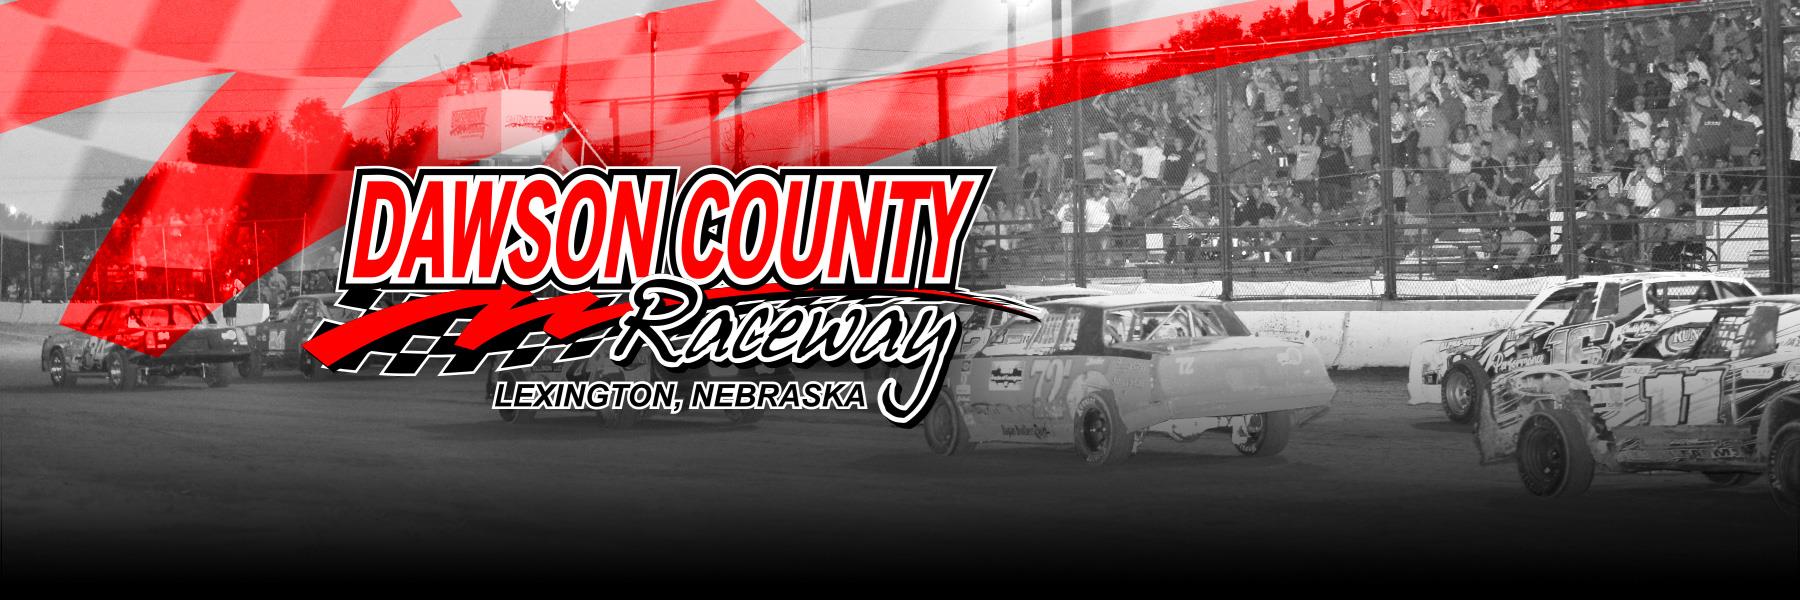 9/19/2021 - Dawson County Raceway